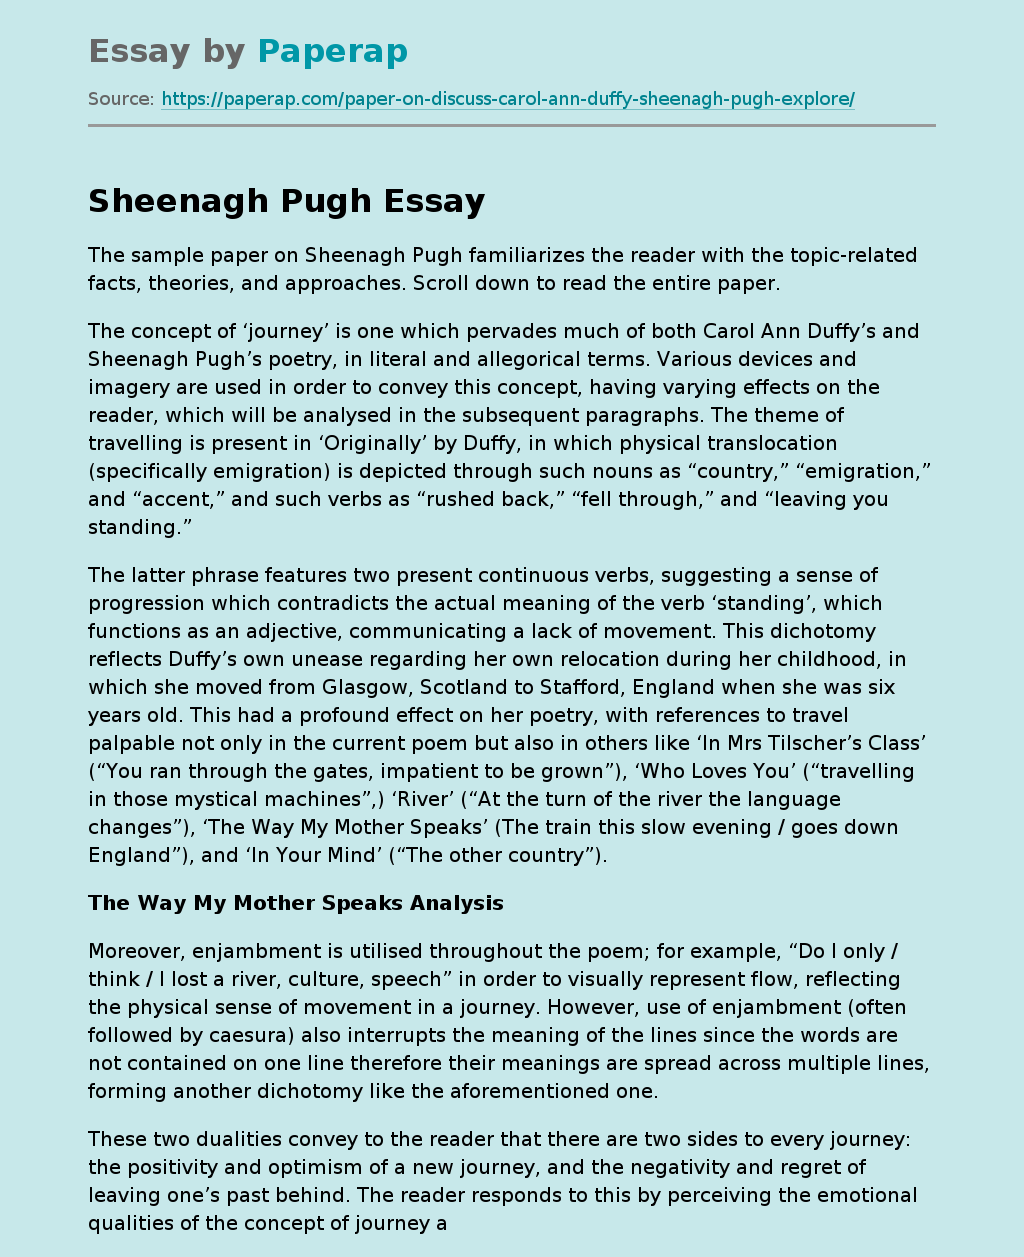 Sheenagh Pugh: An Overview